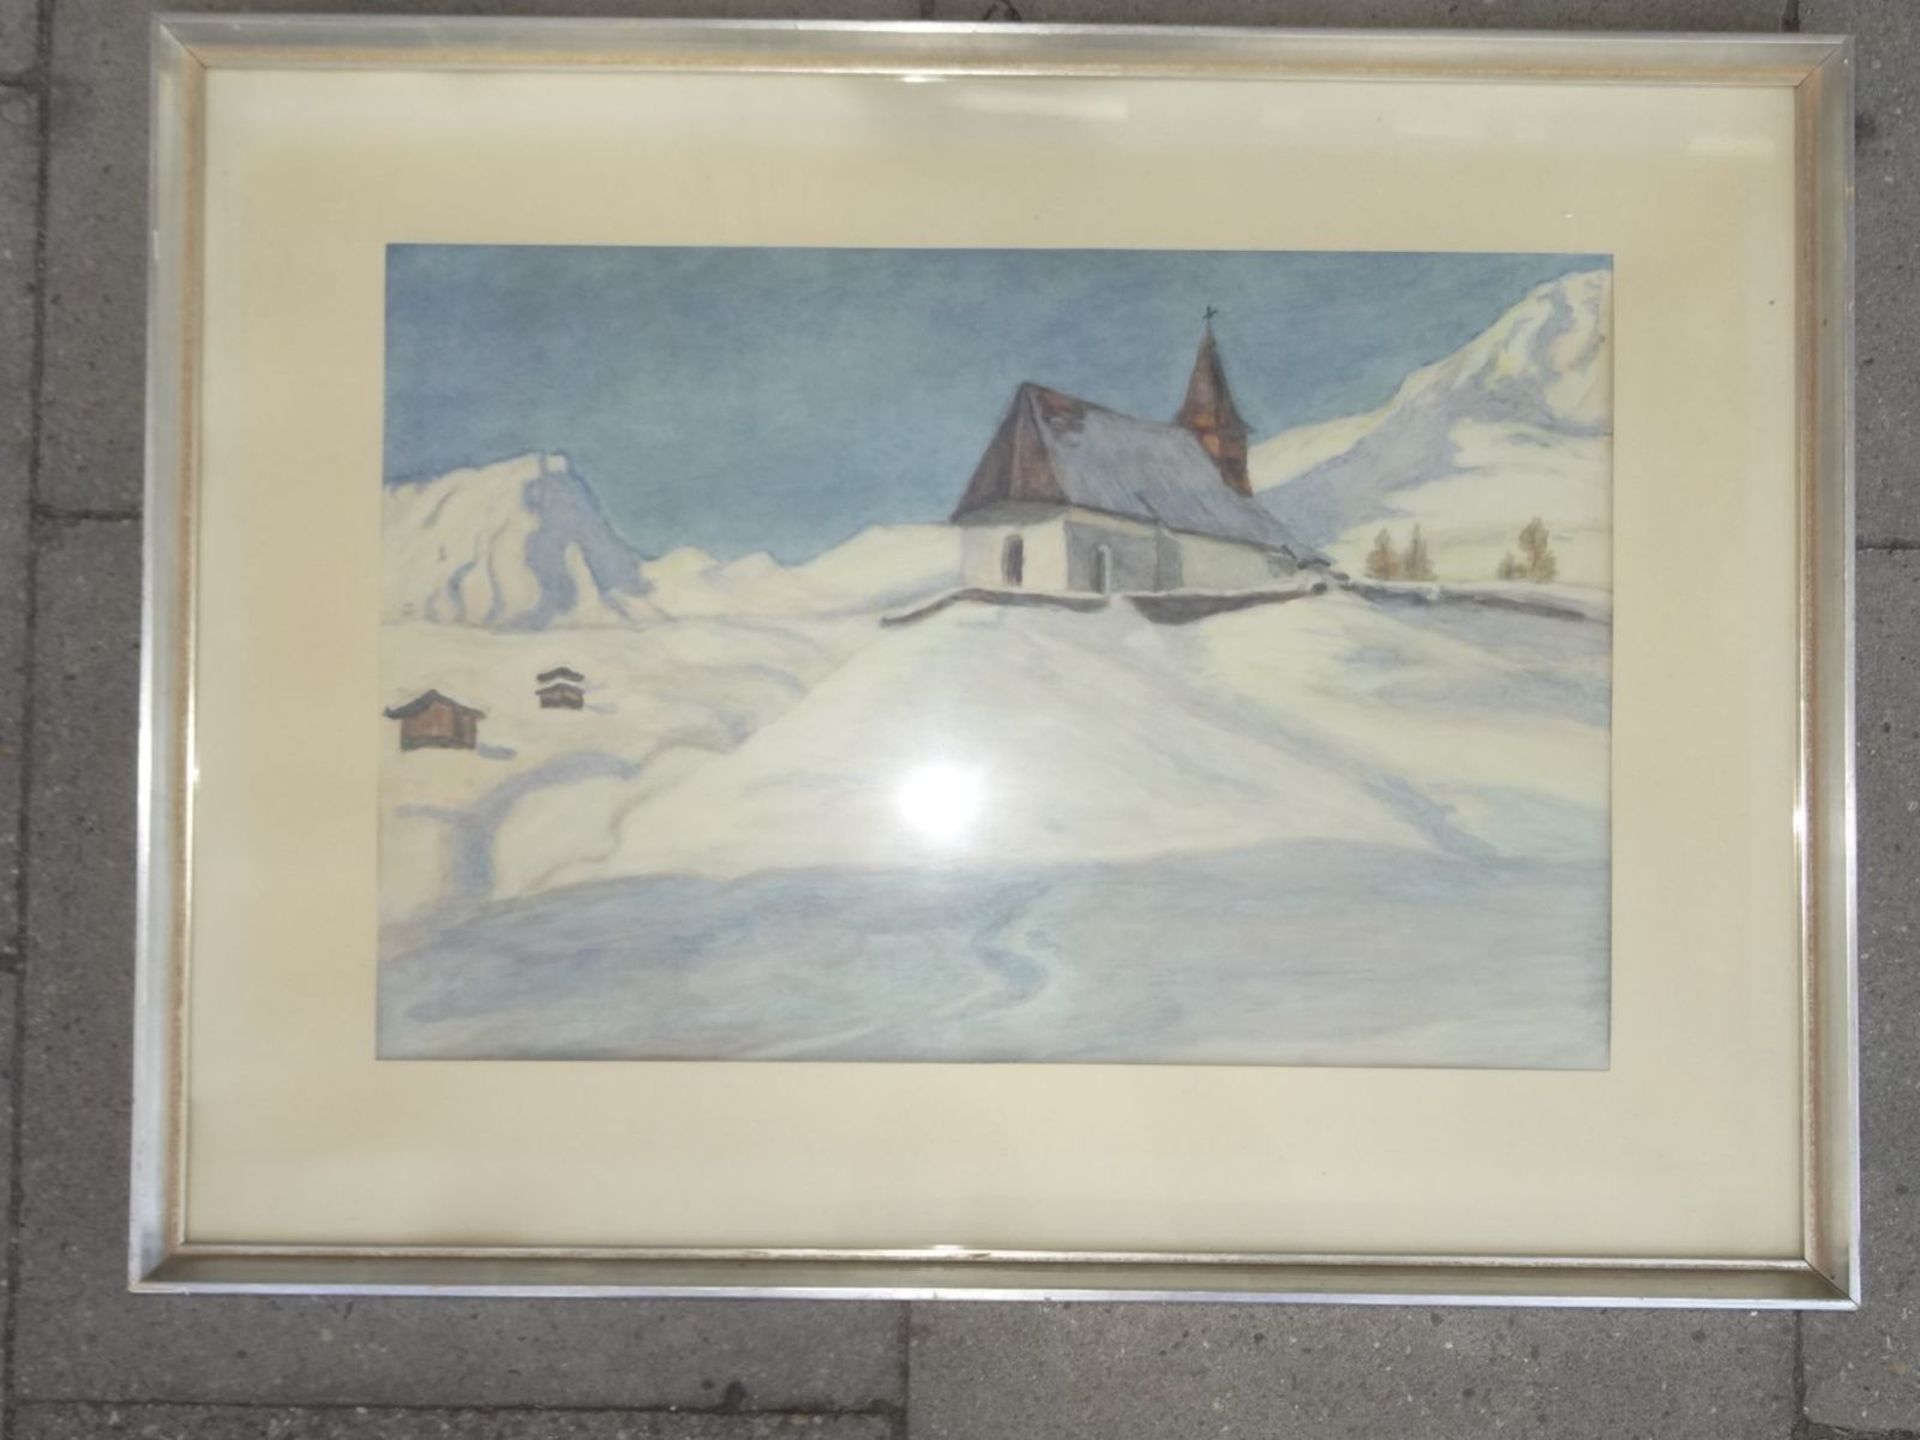 anonyme Bergkirche in Schneelandschaft,, ger/Glas, wie vorher, event. unter PP signiert, RG 50x68 - Bild 4 aus 4